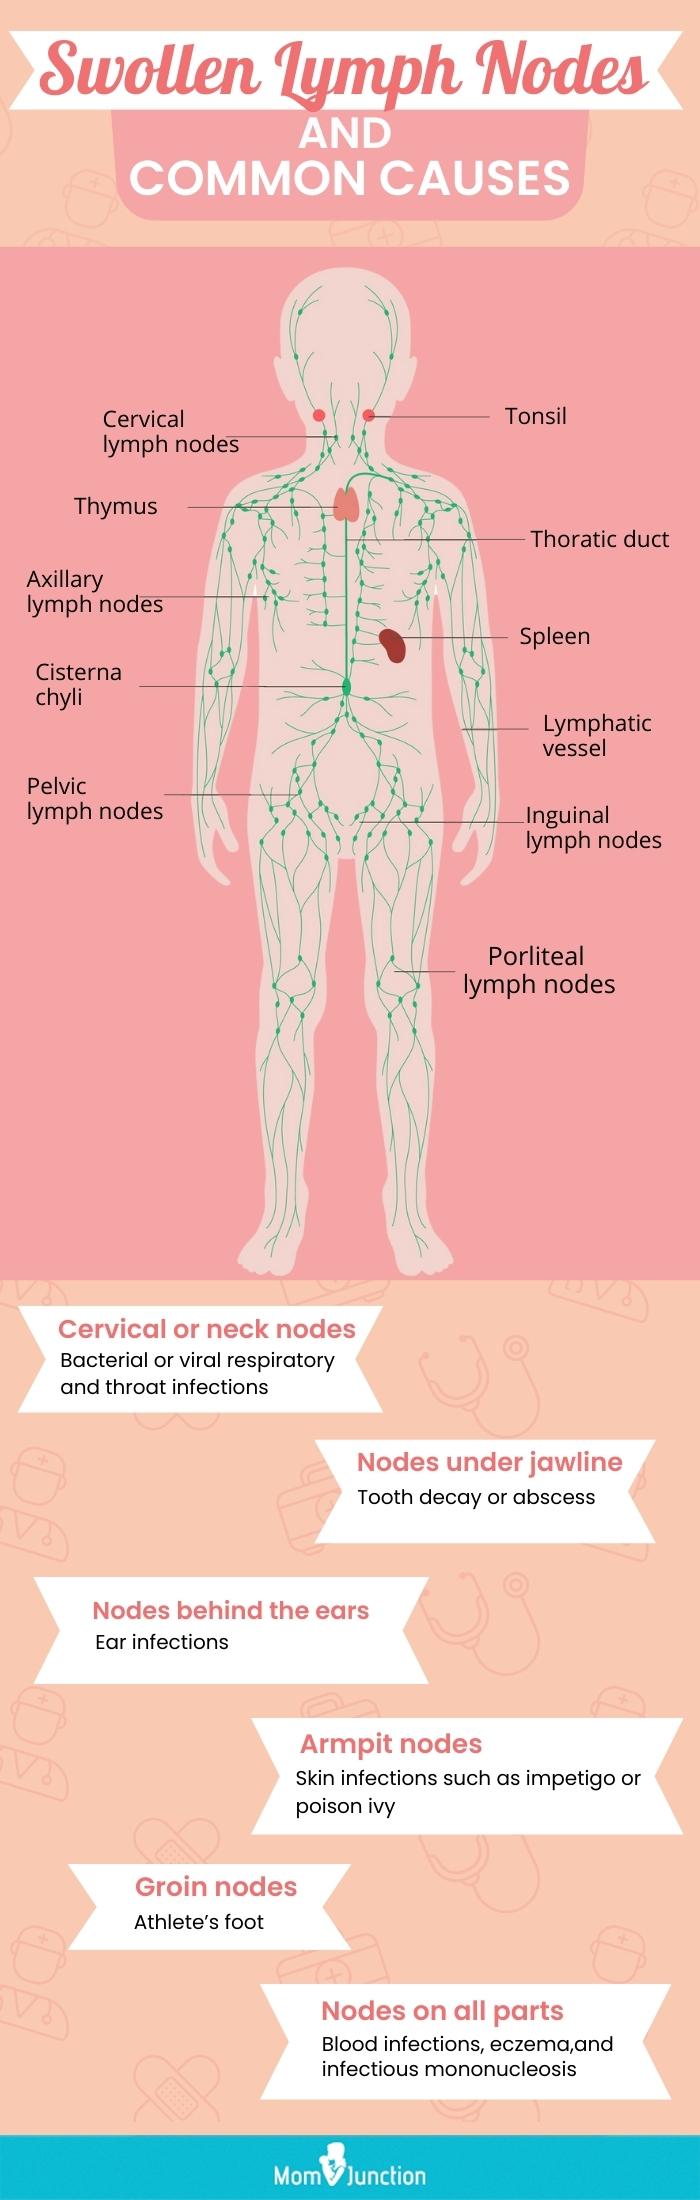 淋巴结肿大及其常见原因(信息图)